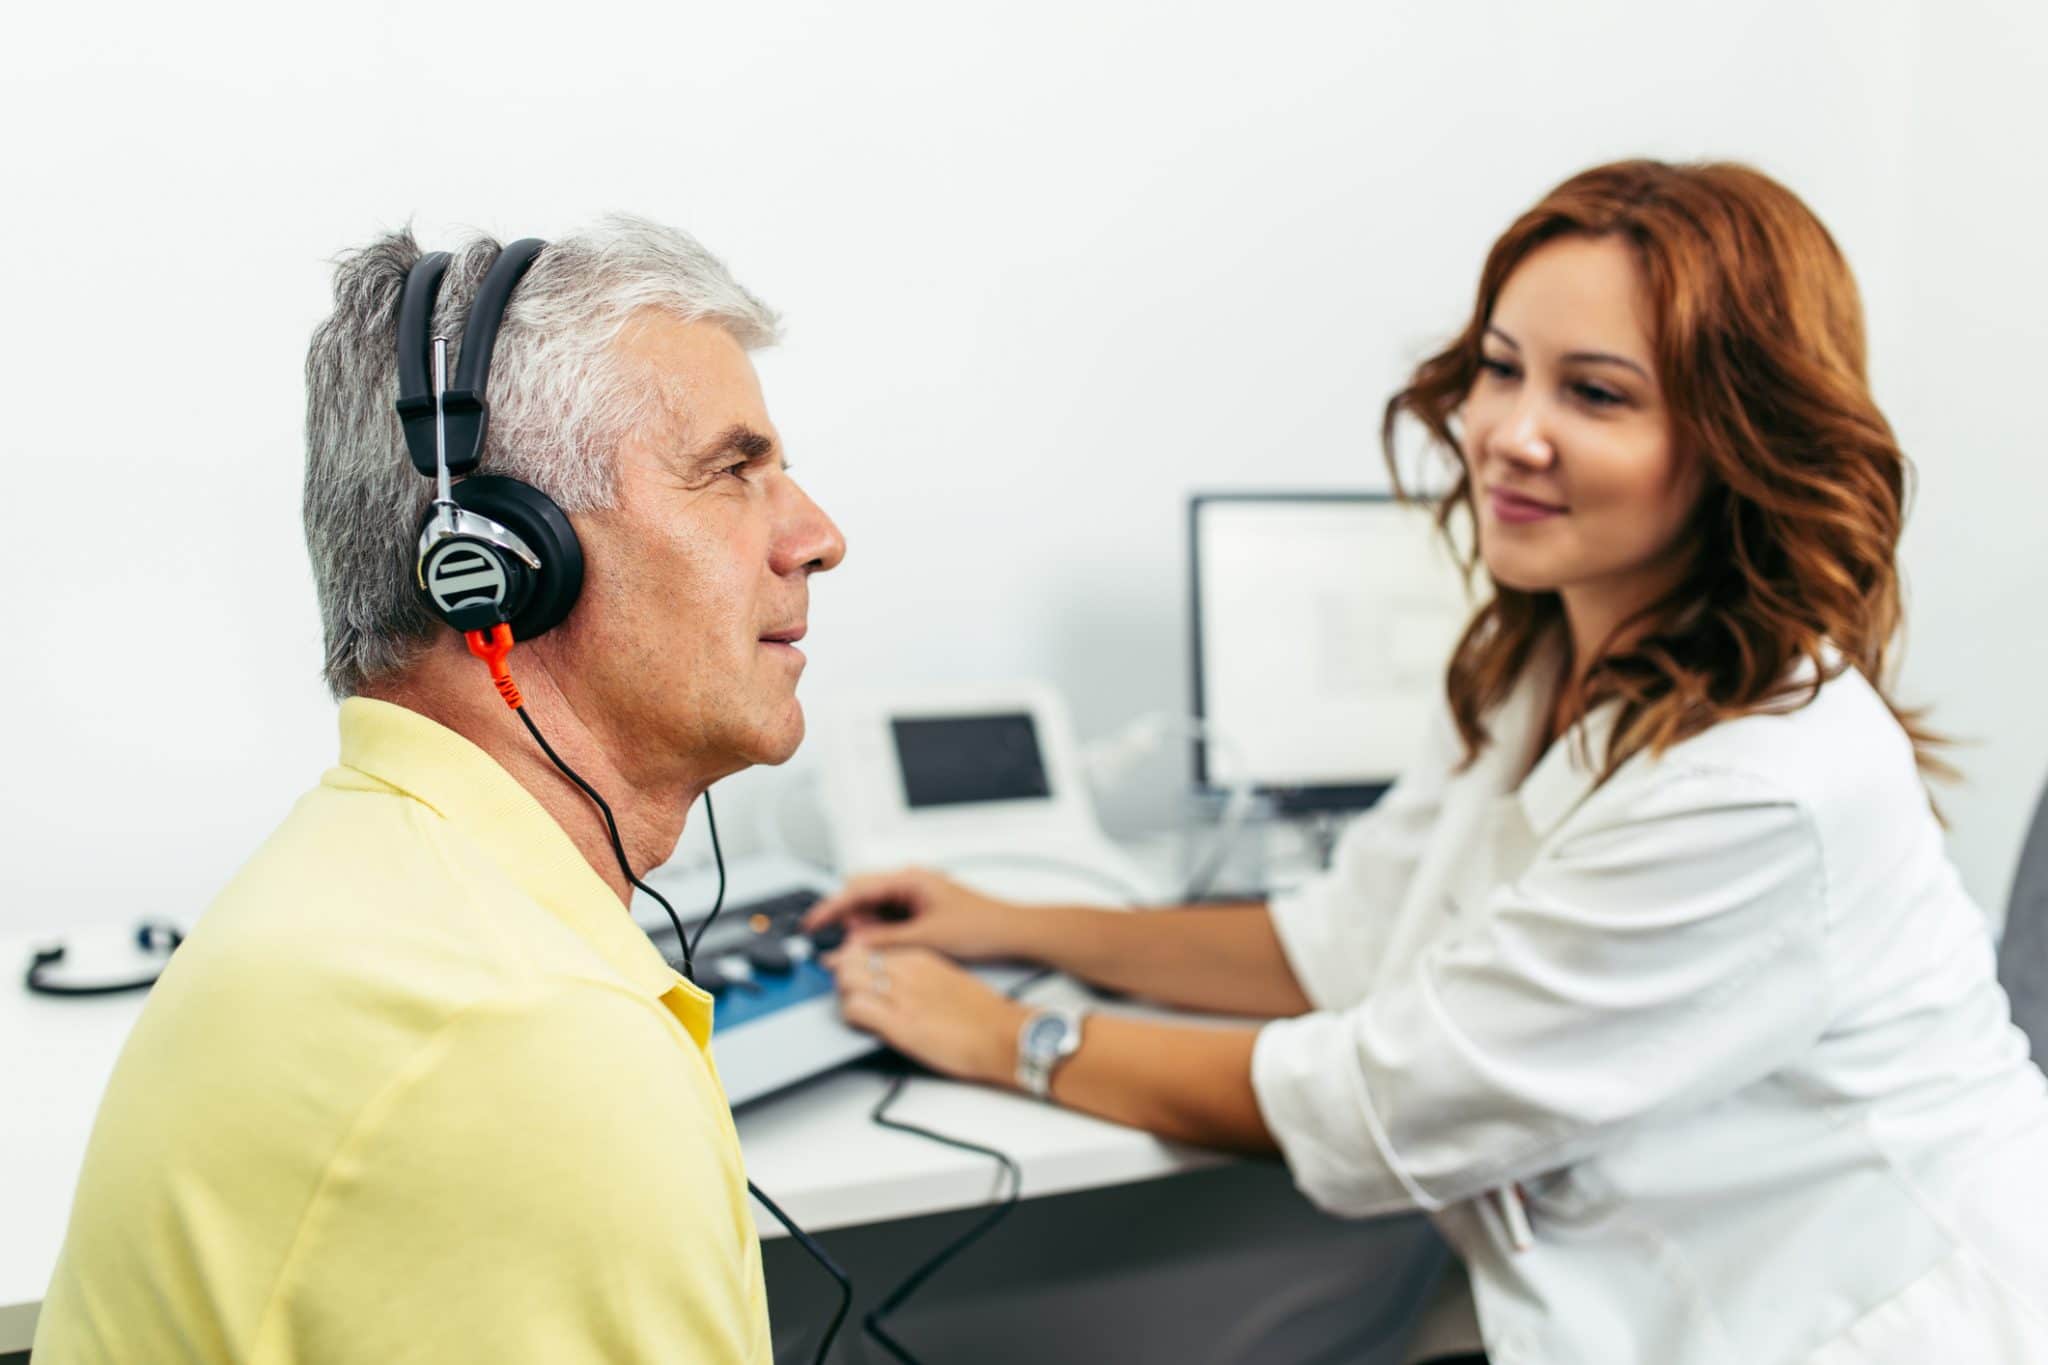 สังเกตตัวเอง ว่าเป็นหนึ่งใน ผู้ที่มีระดับการได้ยินที่ผิดปกติหรือไม่